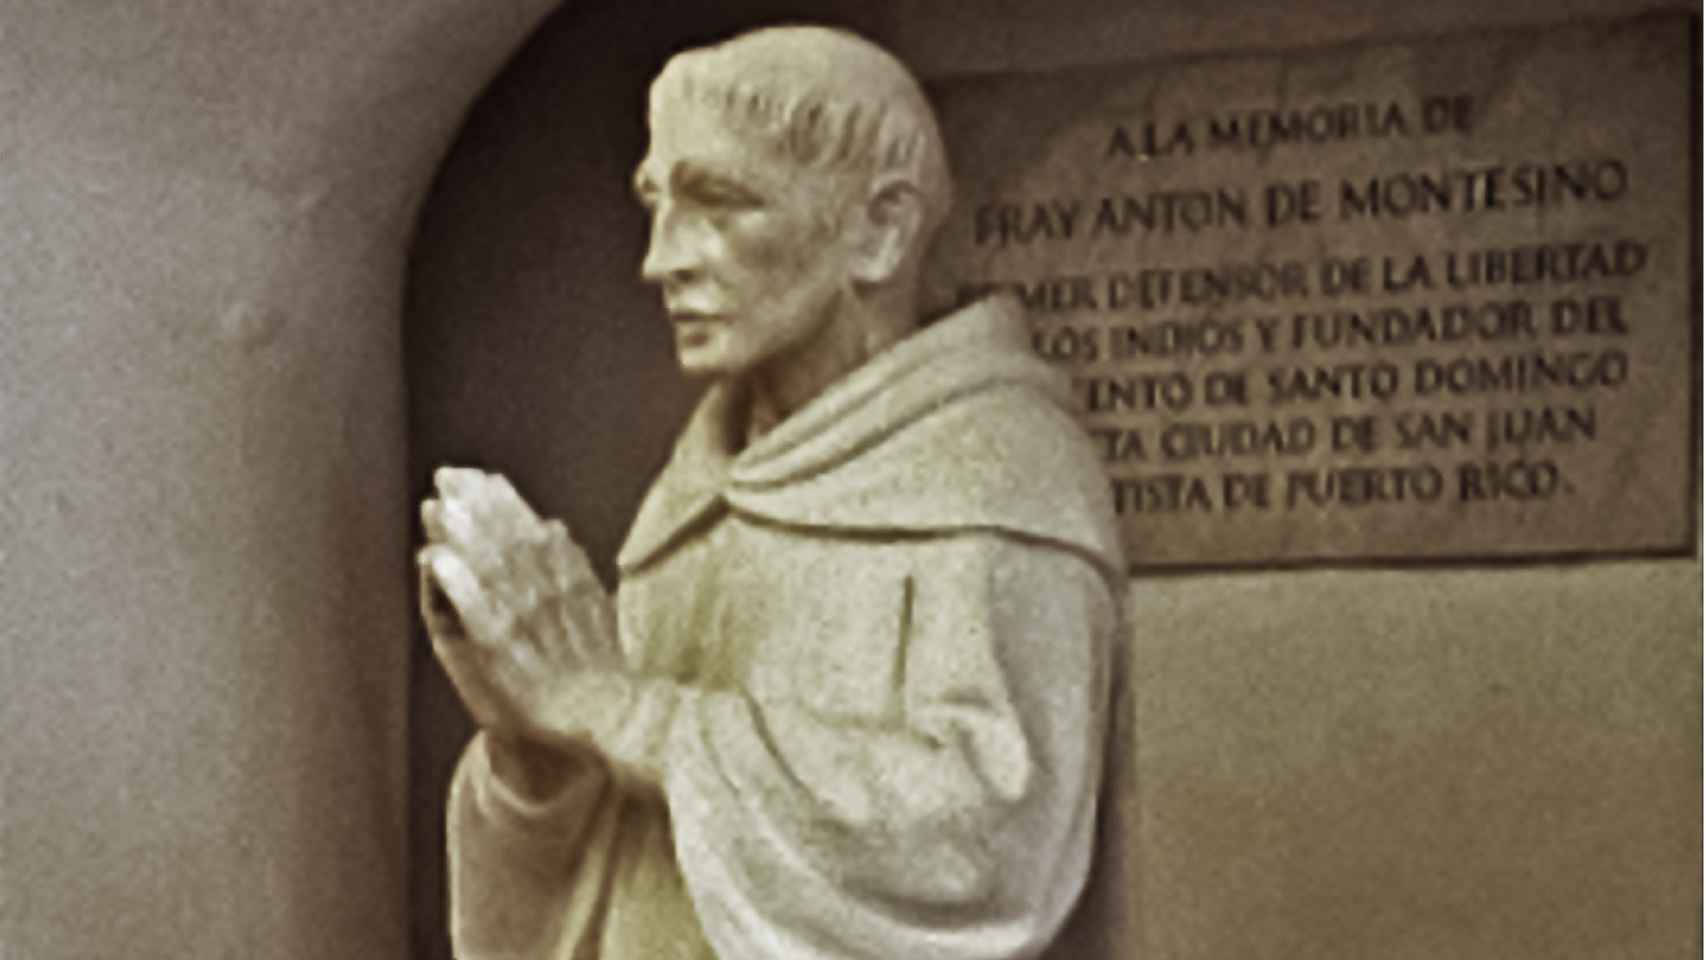 Escultura de Antonio de Montesinos en el convento de Santo Domingo.